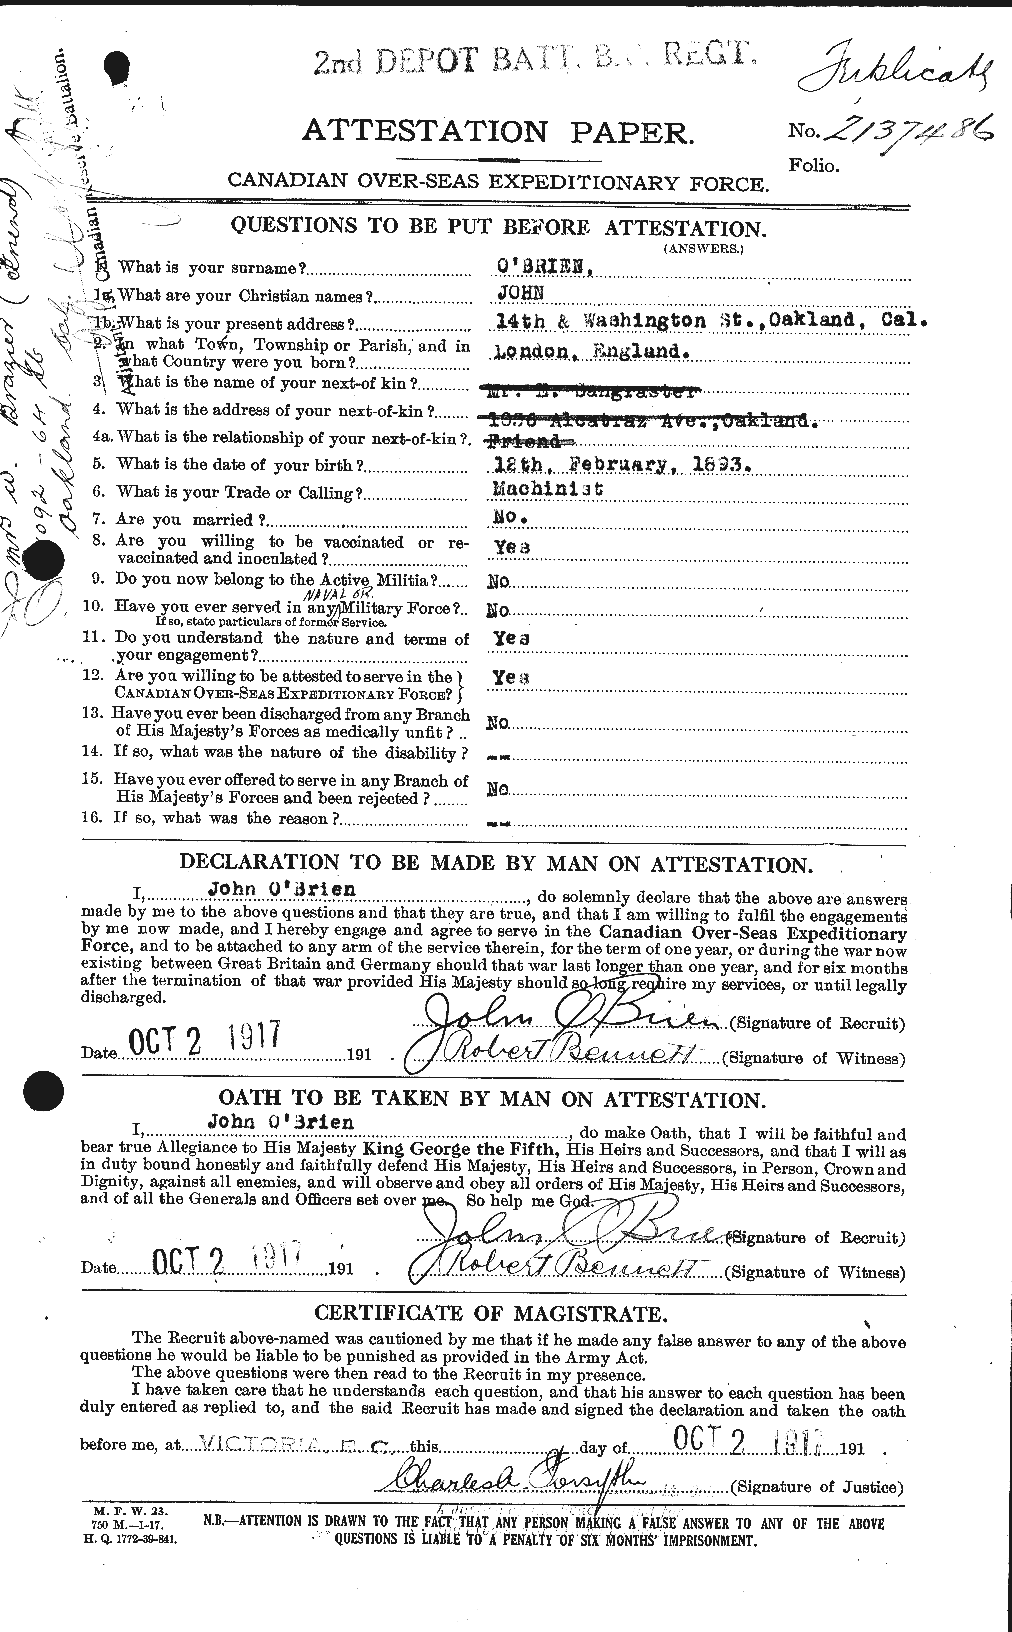 Dossiers du Personnel de la Première Guerre mondiale - CEC 554151a